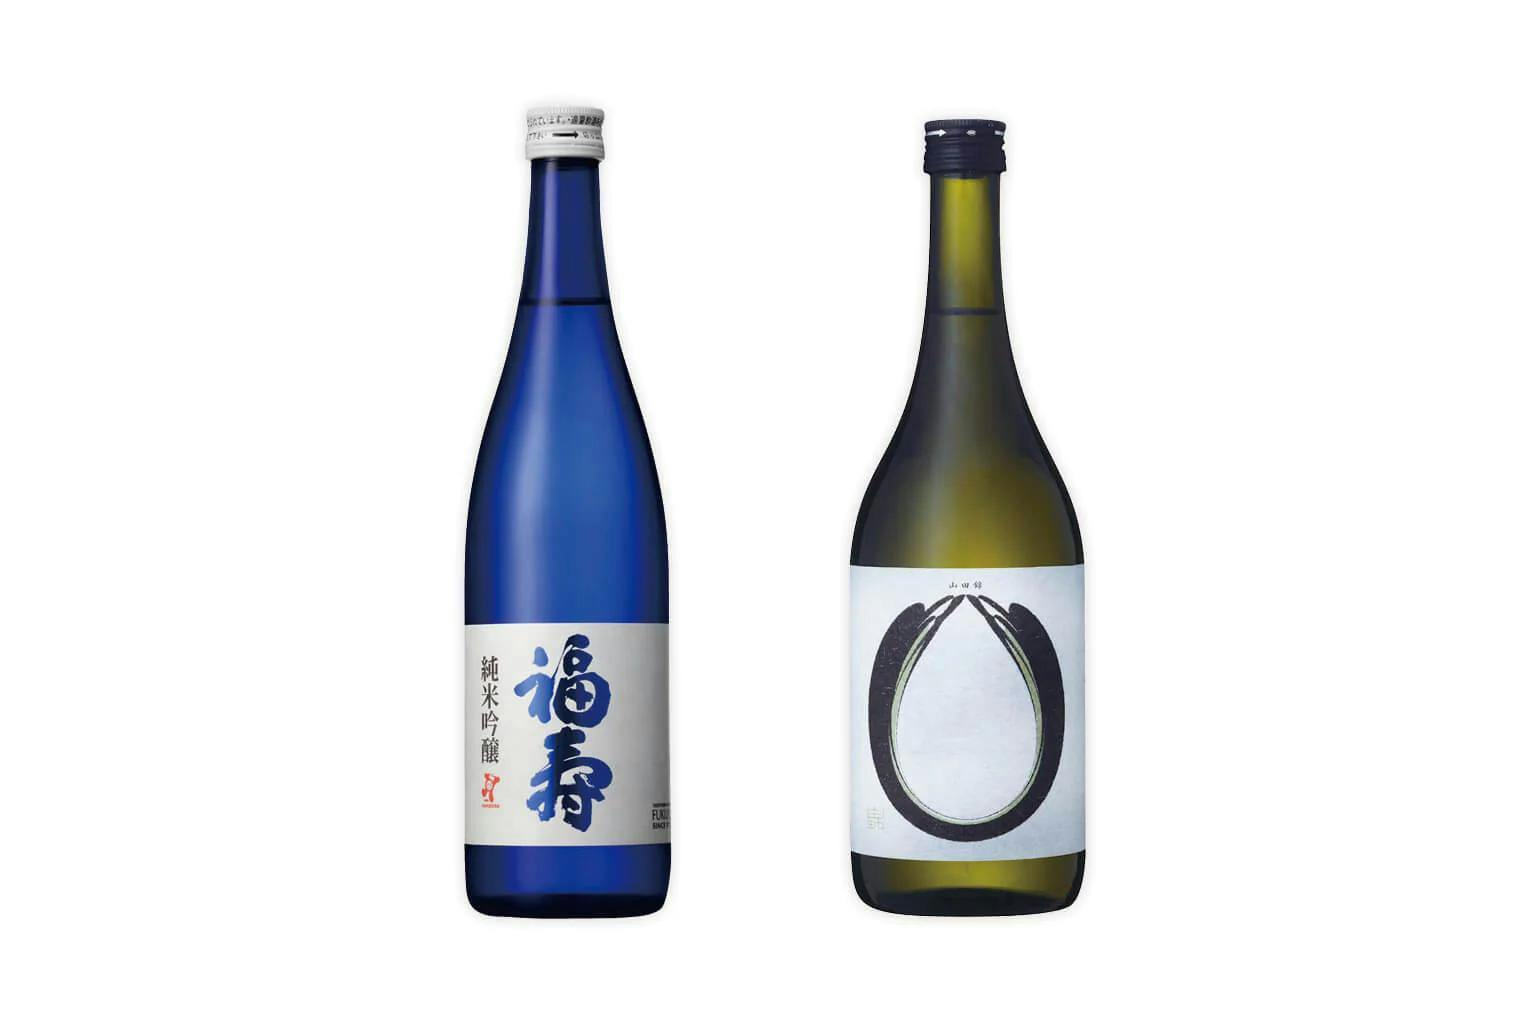 Bottles of Fukuju blue